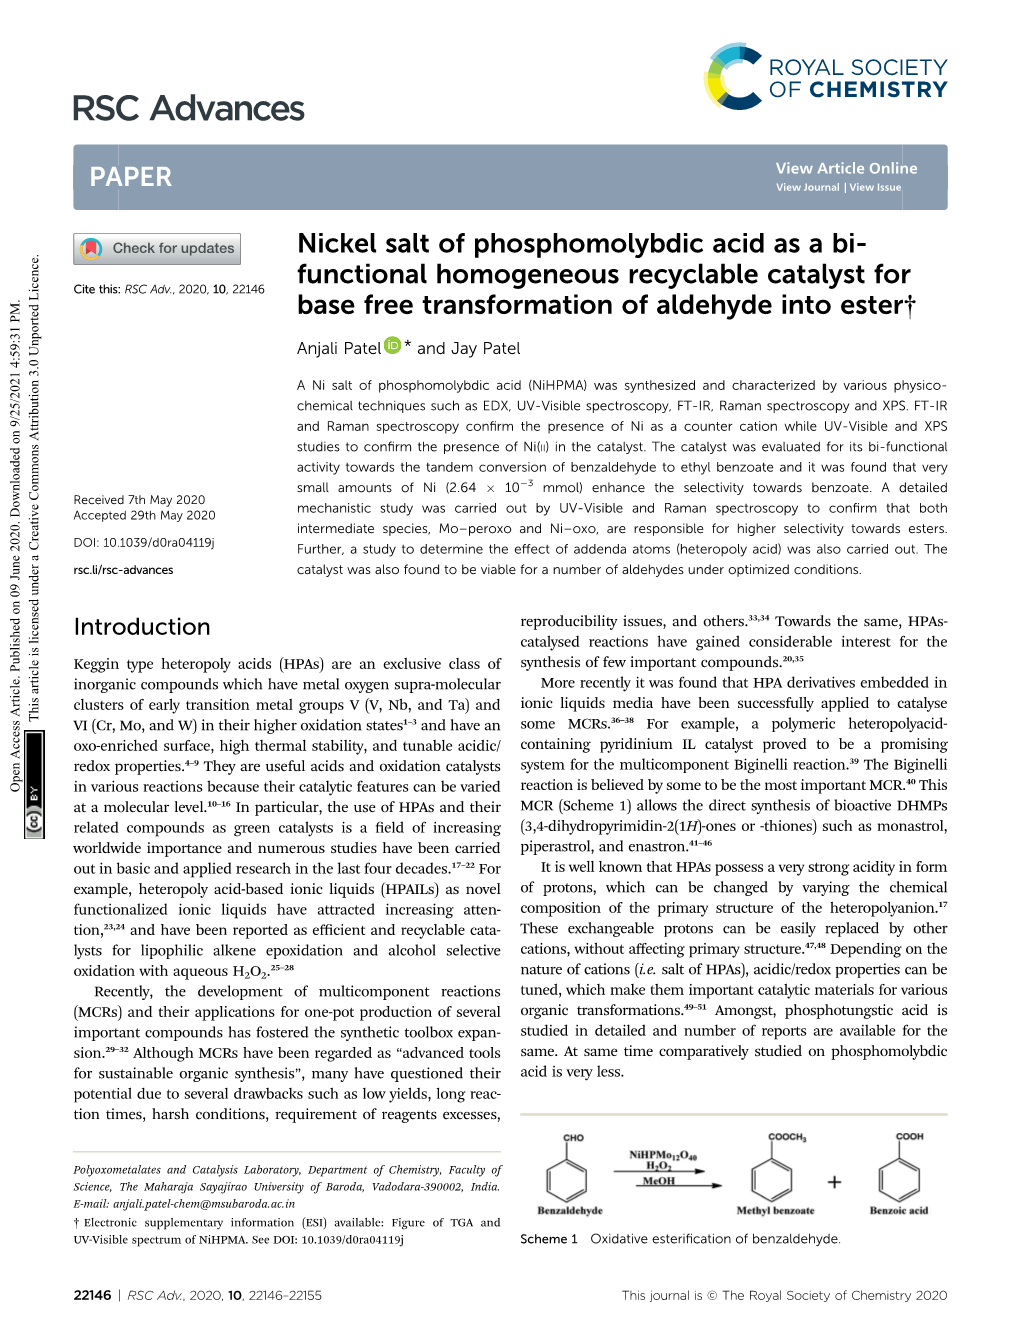 Nickel Salt of Phosphomolybdic Acid As a Bi-Functional Homogeneous